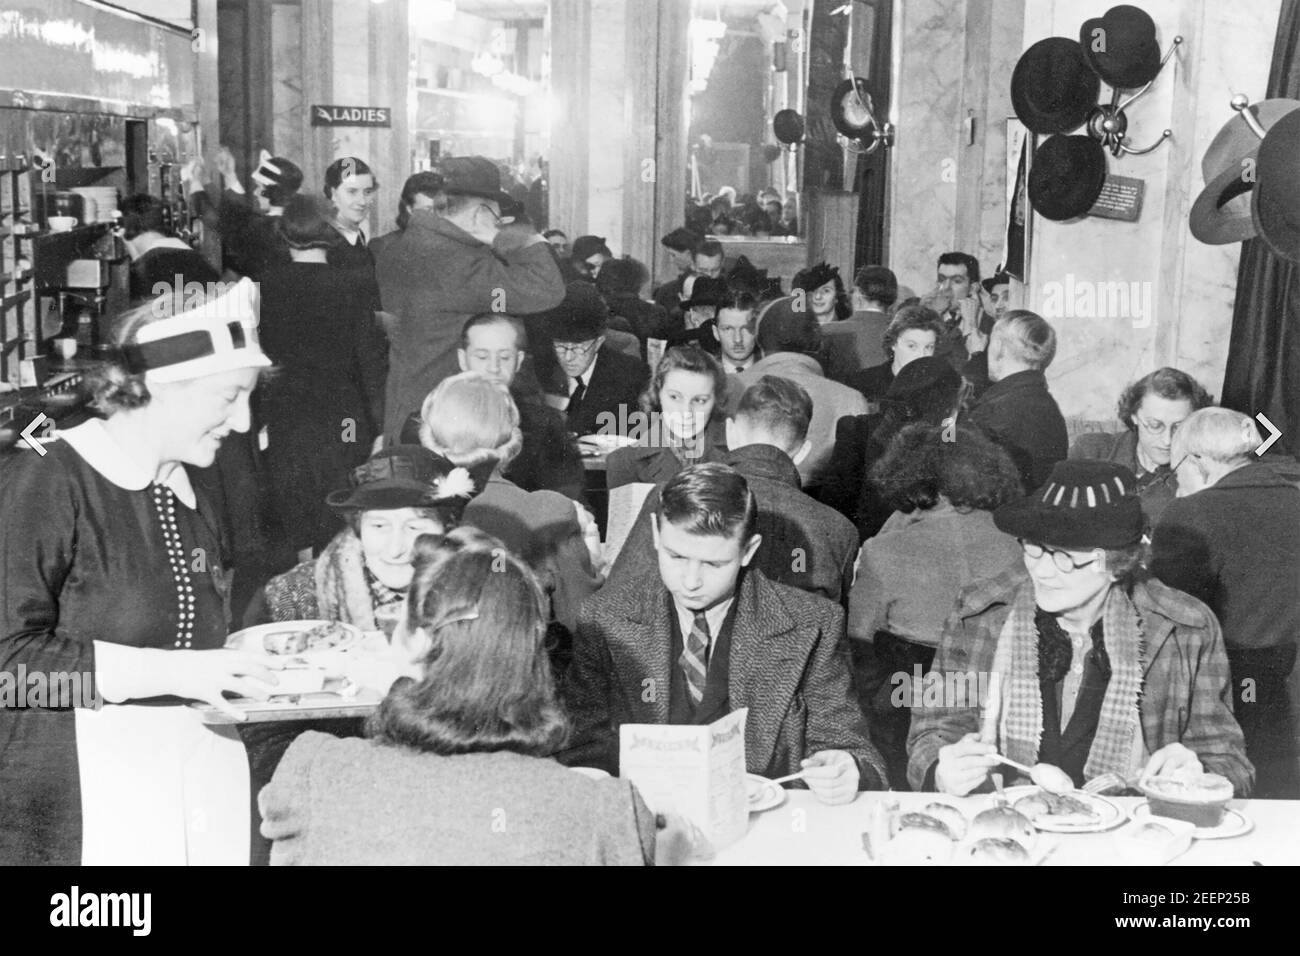 J. LYONS & CO catena britannica di ristoranti, ristoranti e hotel fondata nel 1884. I clienti al sacco per il tè pomeridiano presso la famosa Lyons' Corner House a Coventry Street, Londra nel gennaio 1942. Una delle famose cameriere di Nippie sta servendo. Foto Stock